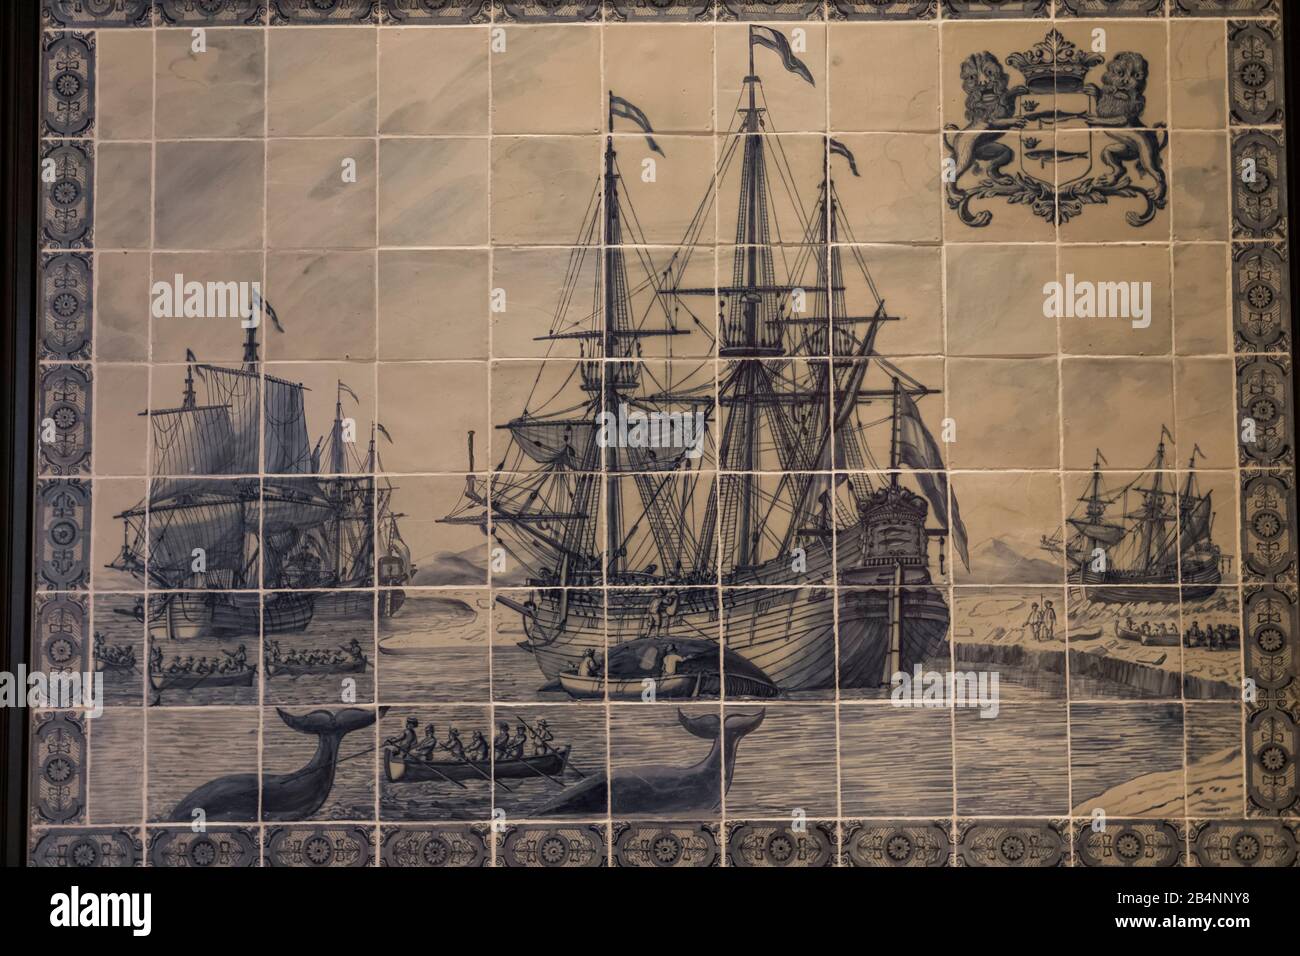 L'Angleterre, Londres, Greenwich, Queen's House Museum and Art Gallery, le néerlandais Delft Tile panneau représentant une flotte de navires de pêche à la baleine Banque D'Images